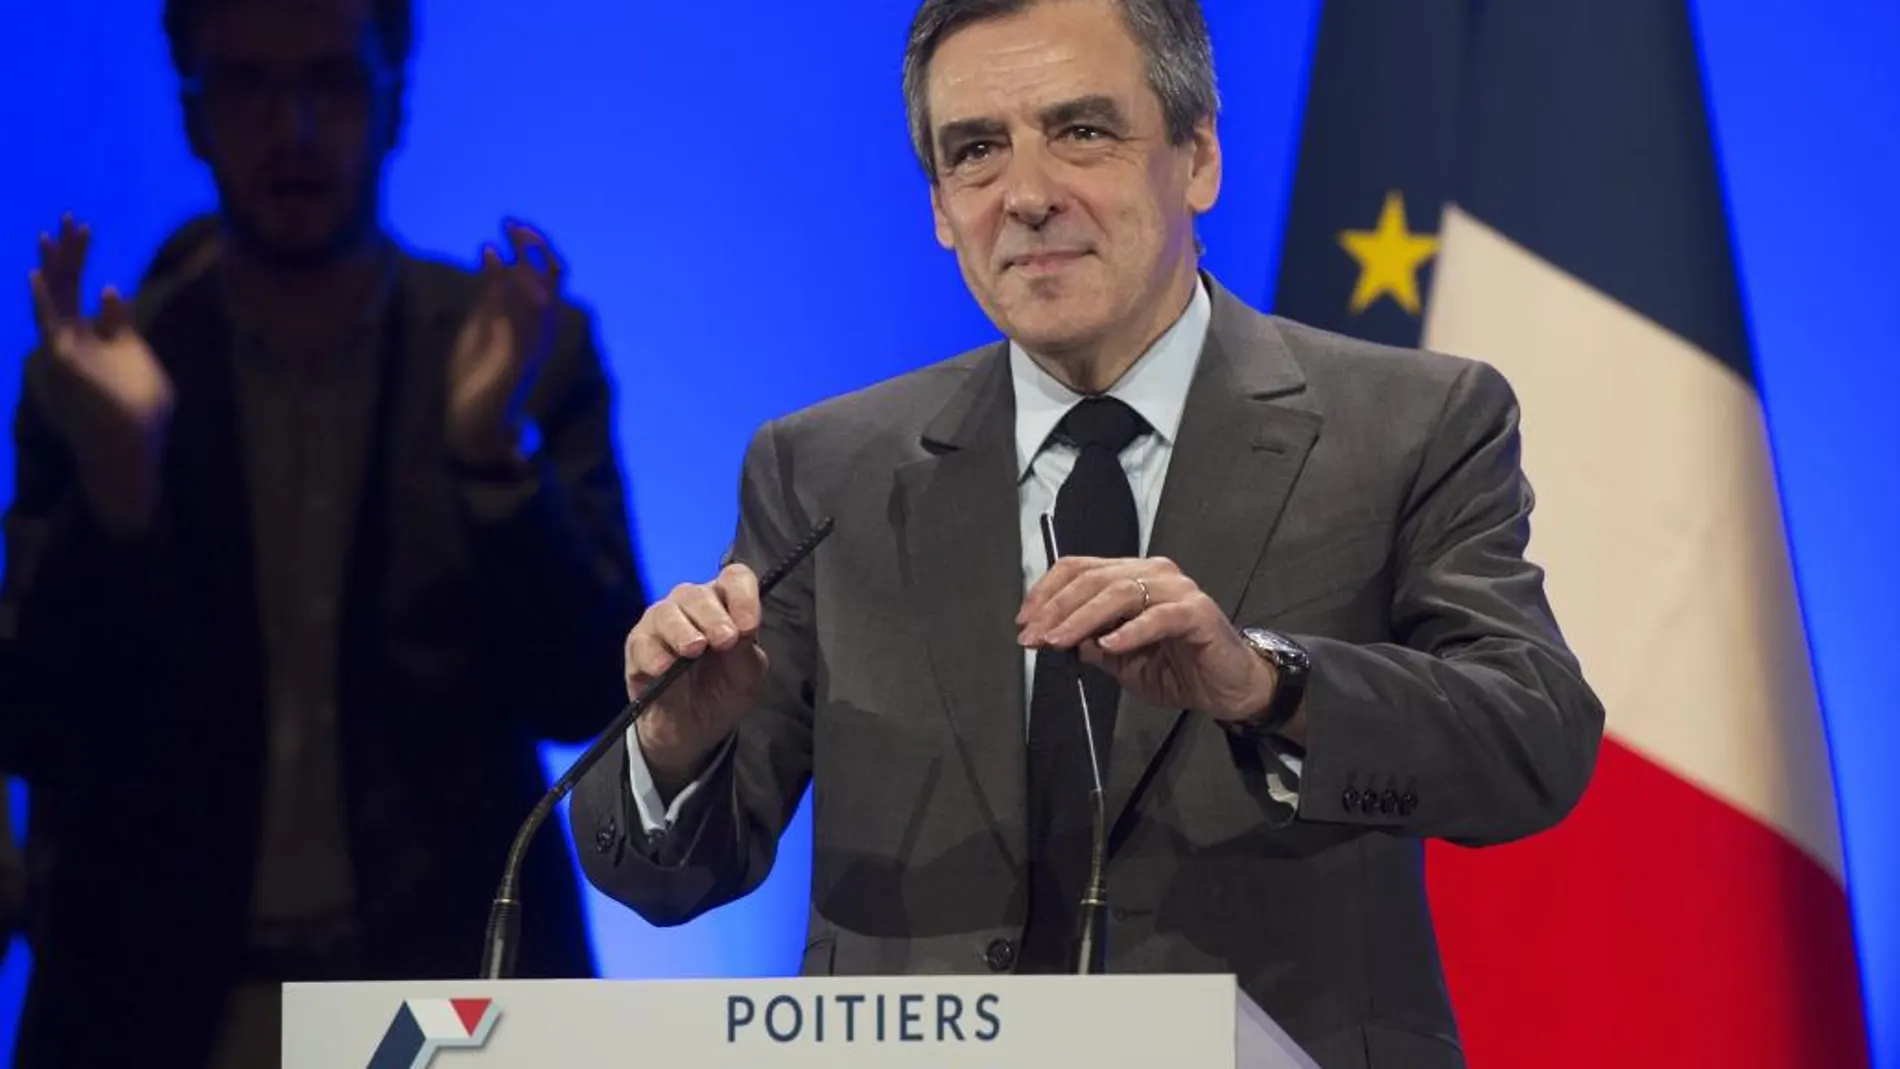 El candidato del partido Les Republicans a las elecciones presidenciales 2017, Francois Fillon